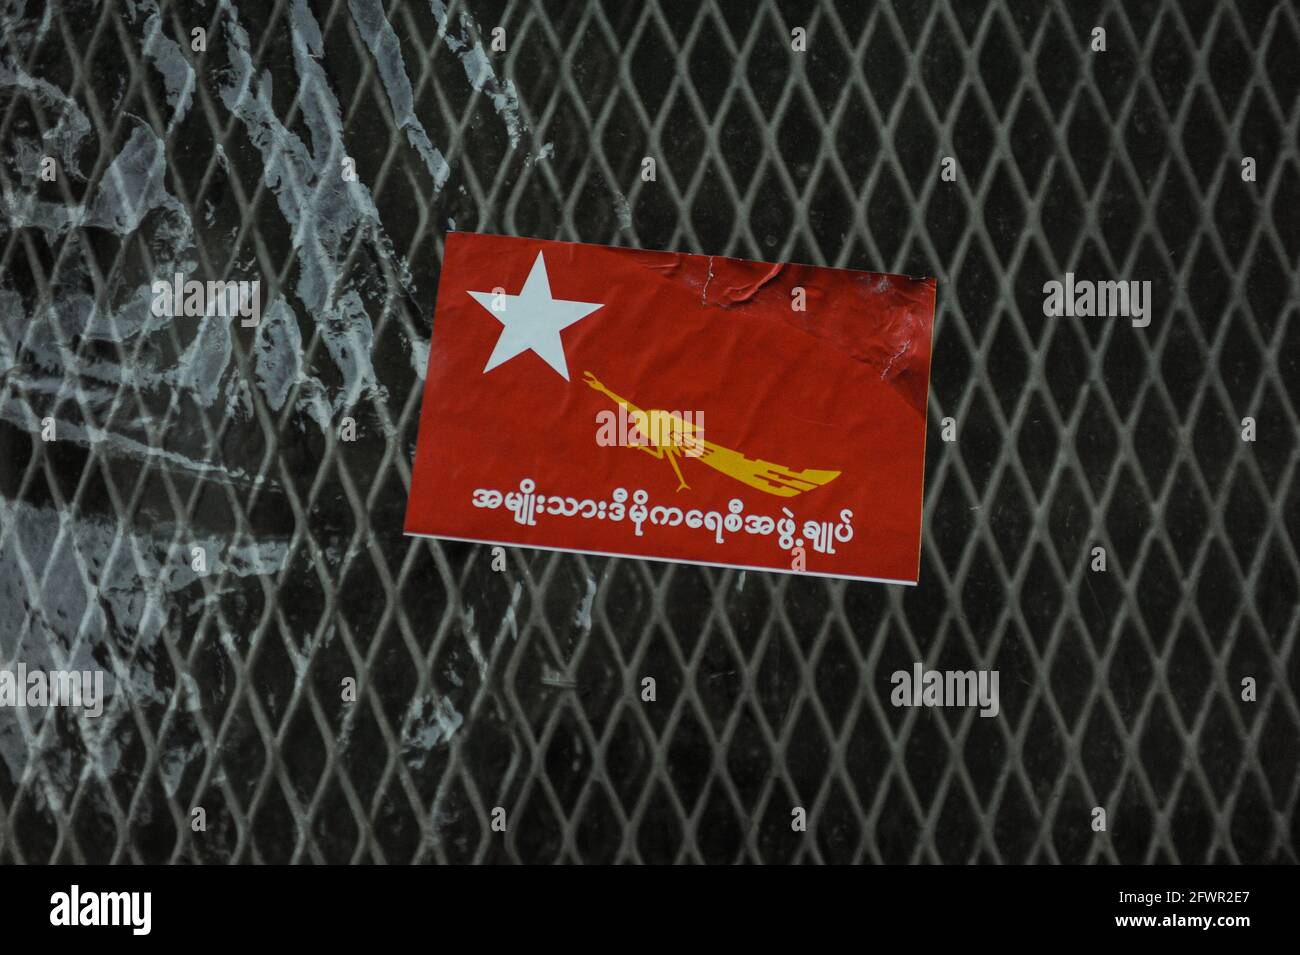 29.10.2015, Yangon, Myanmar, Asie - UN autocollant rouge avec le logo et le lettrage du parti NLD (Ligue nationale pour la démocratie) est collé à une clôture. Banque D'Images